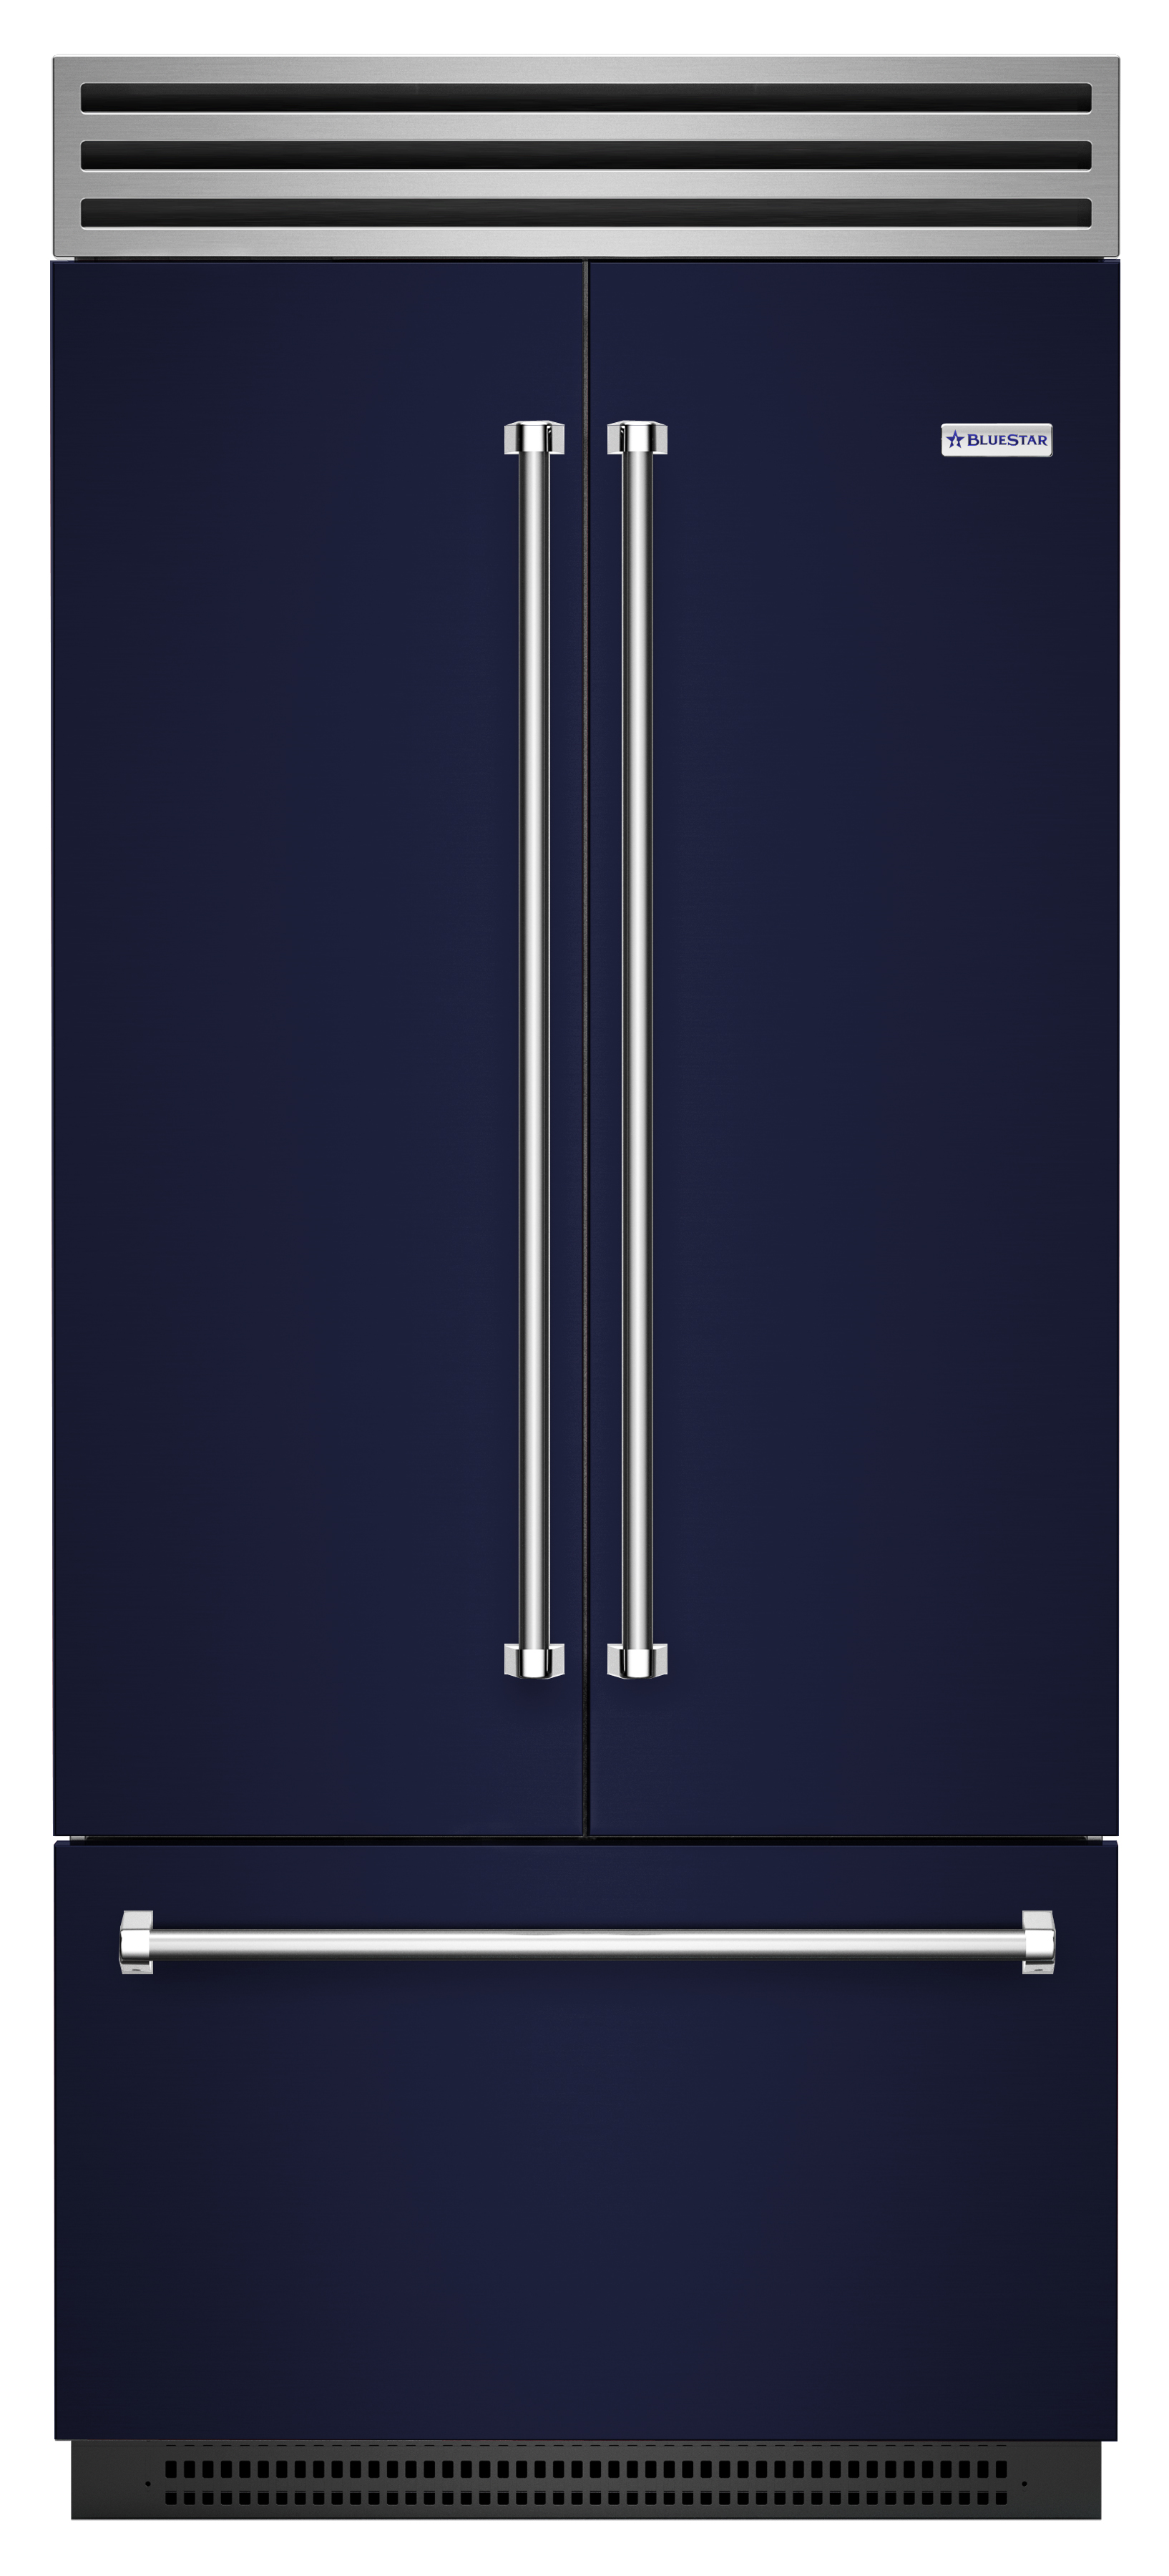 Blue Star French Door model refrigerator